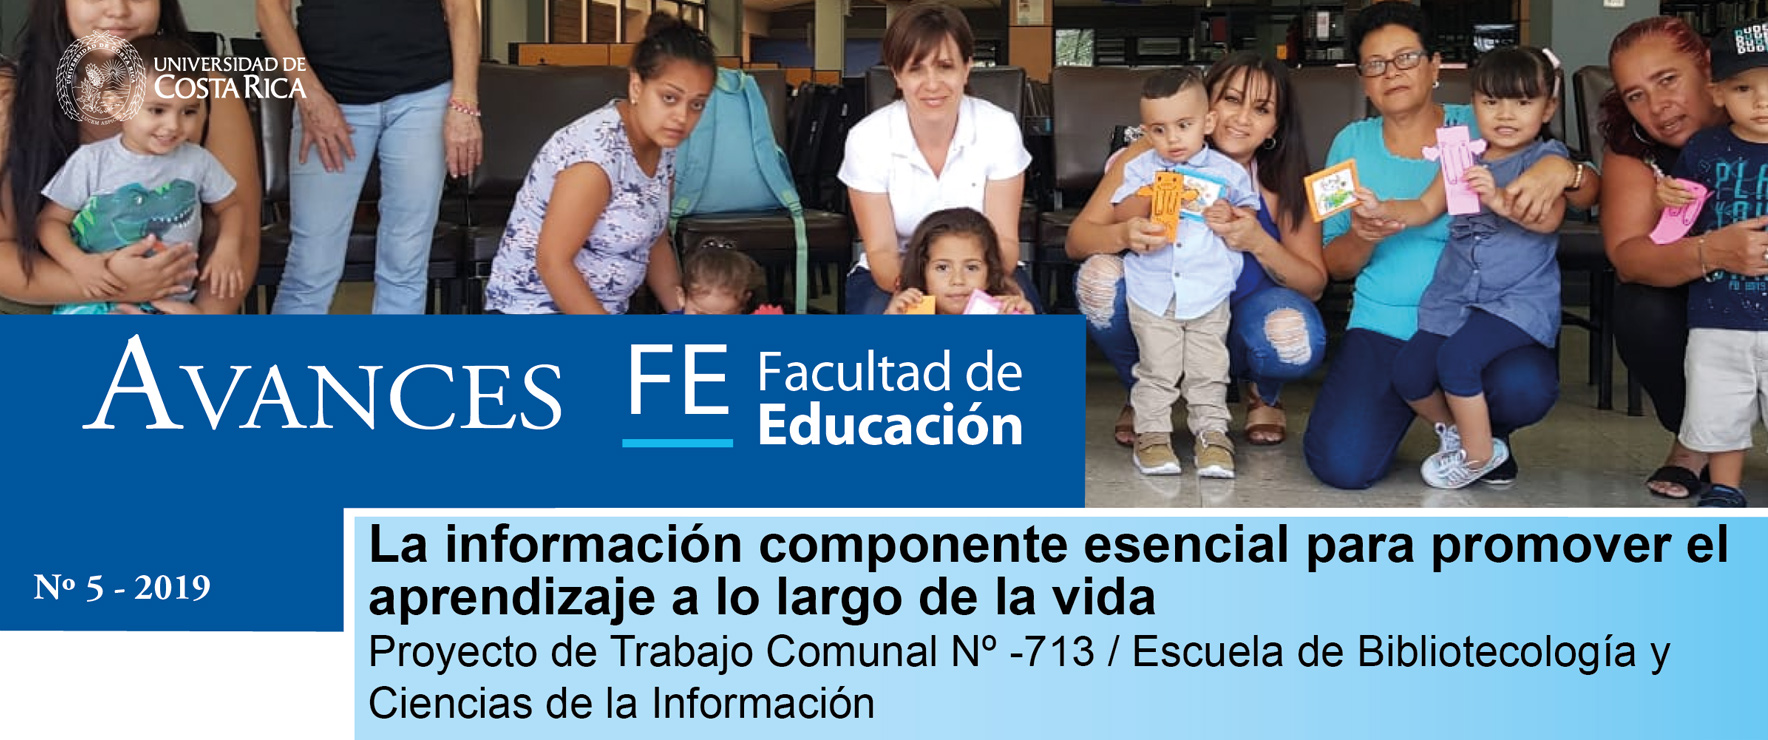 Avances FE de la Facultad de Educación presenta el proyecto de trabajo comunal:La información componente esencial para promover el aprendizaje a lo largo de la vida